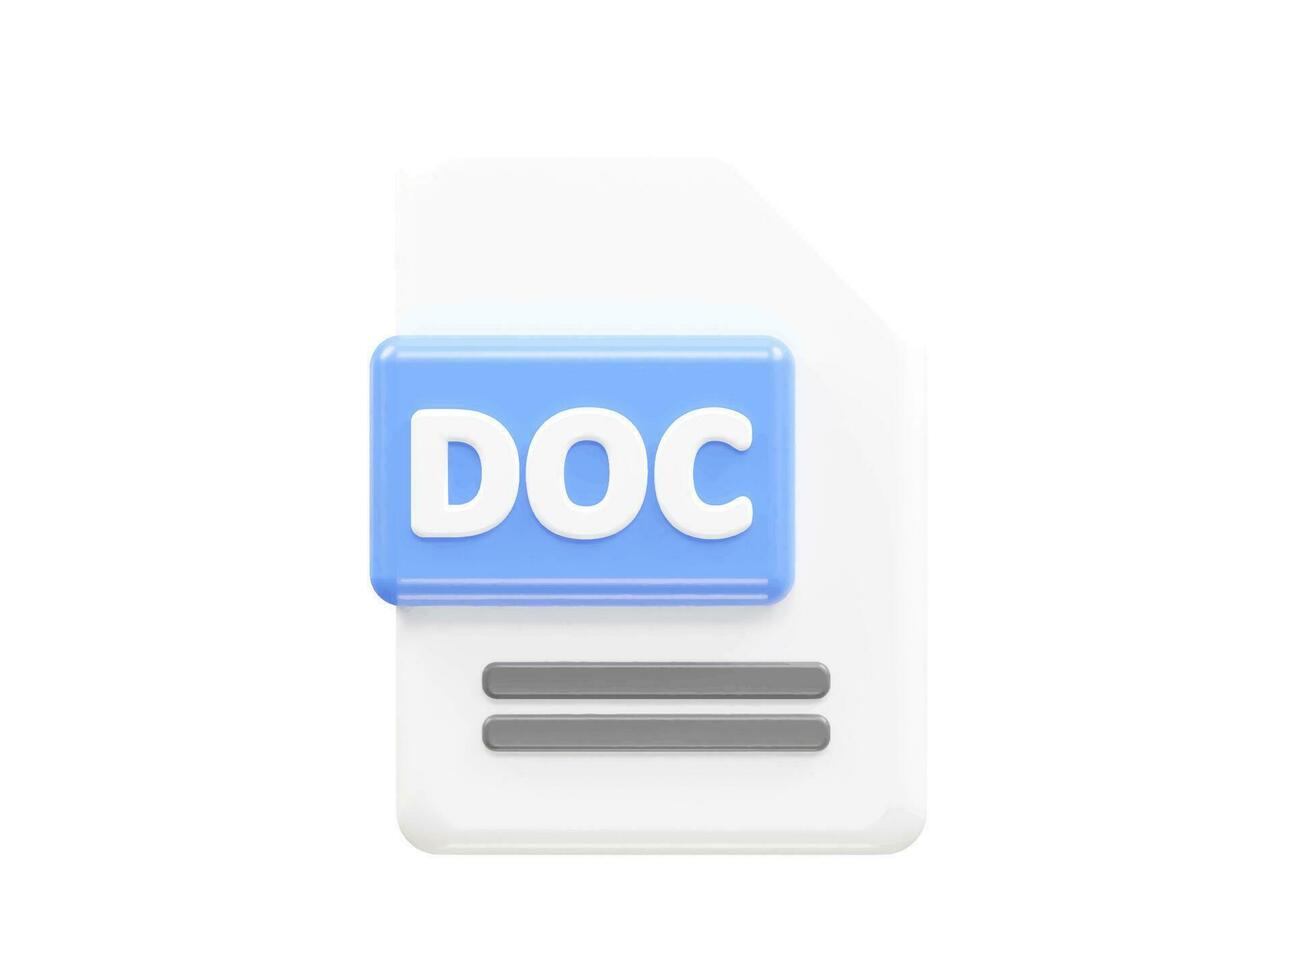 doc fichier format dossier vecteur 3d